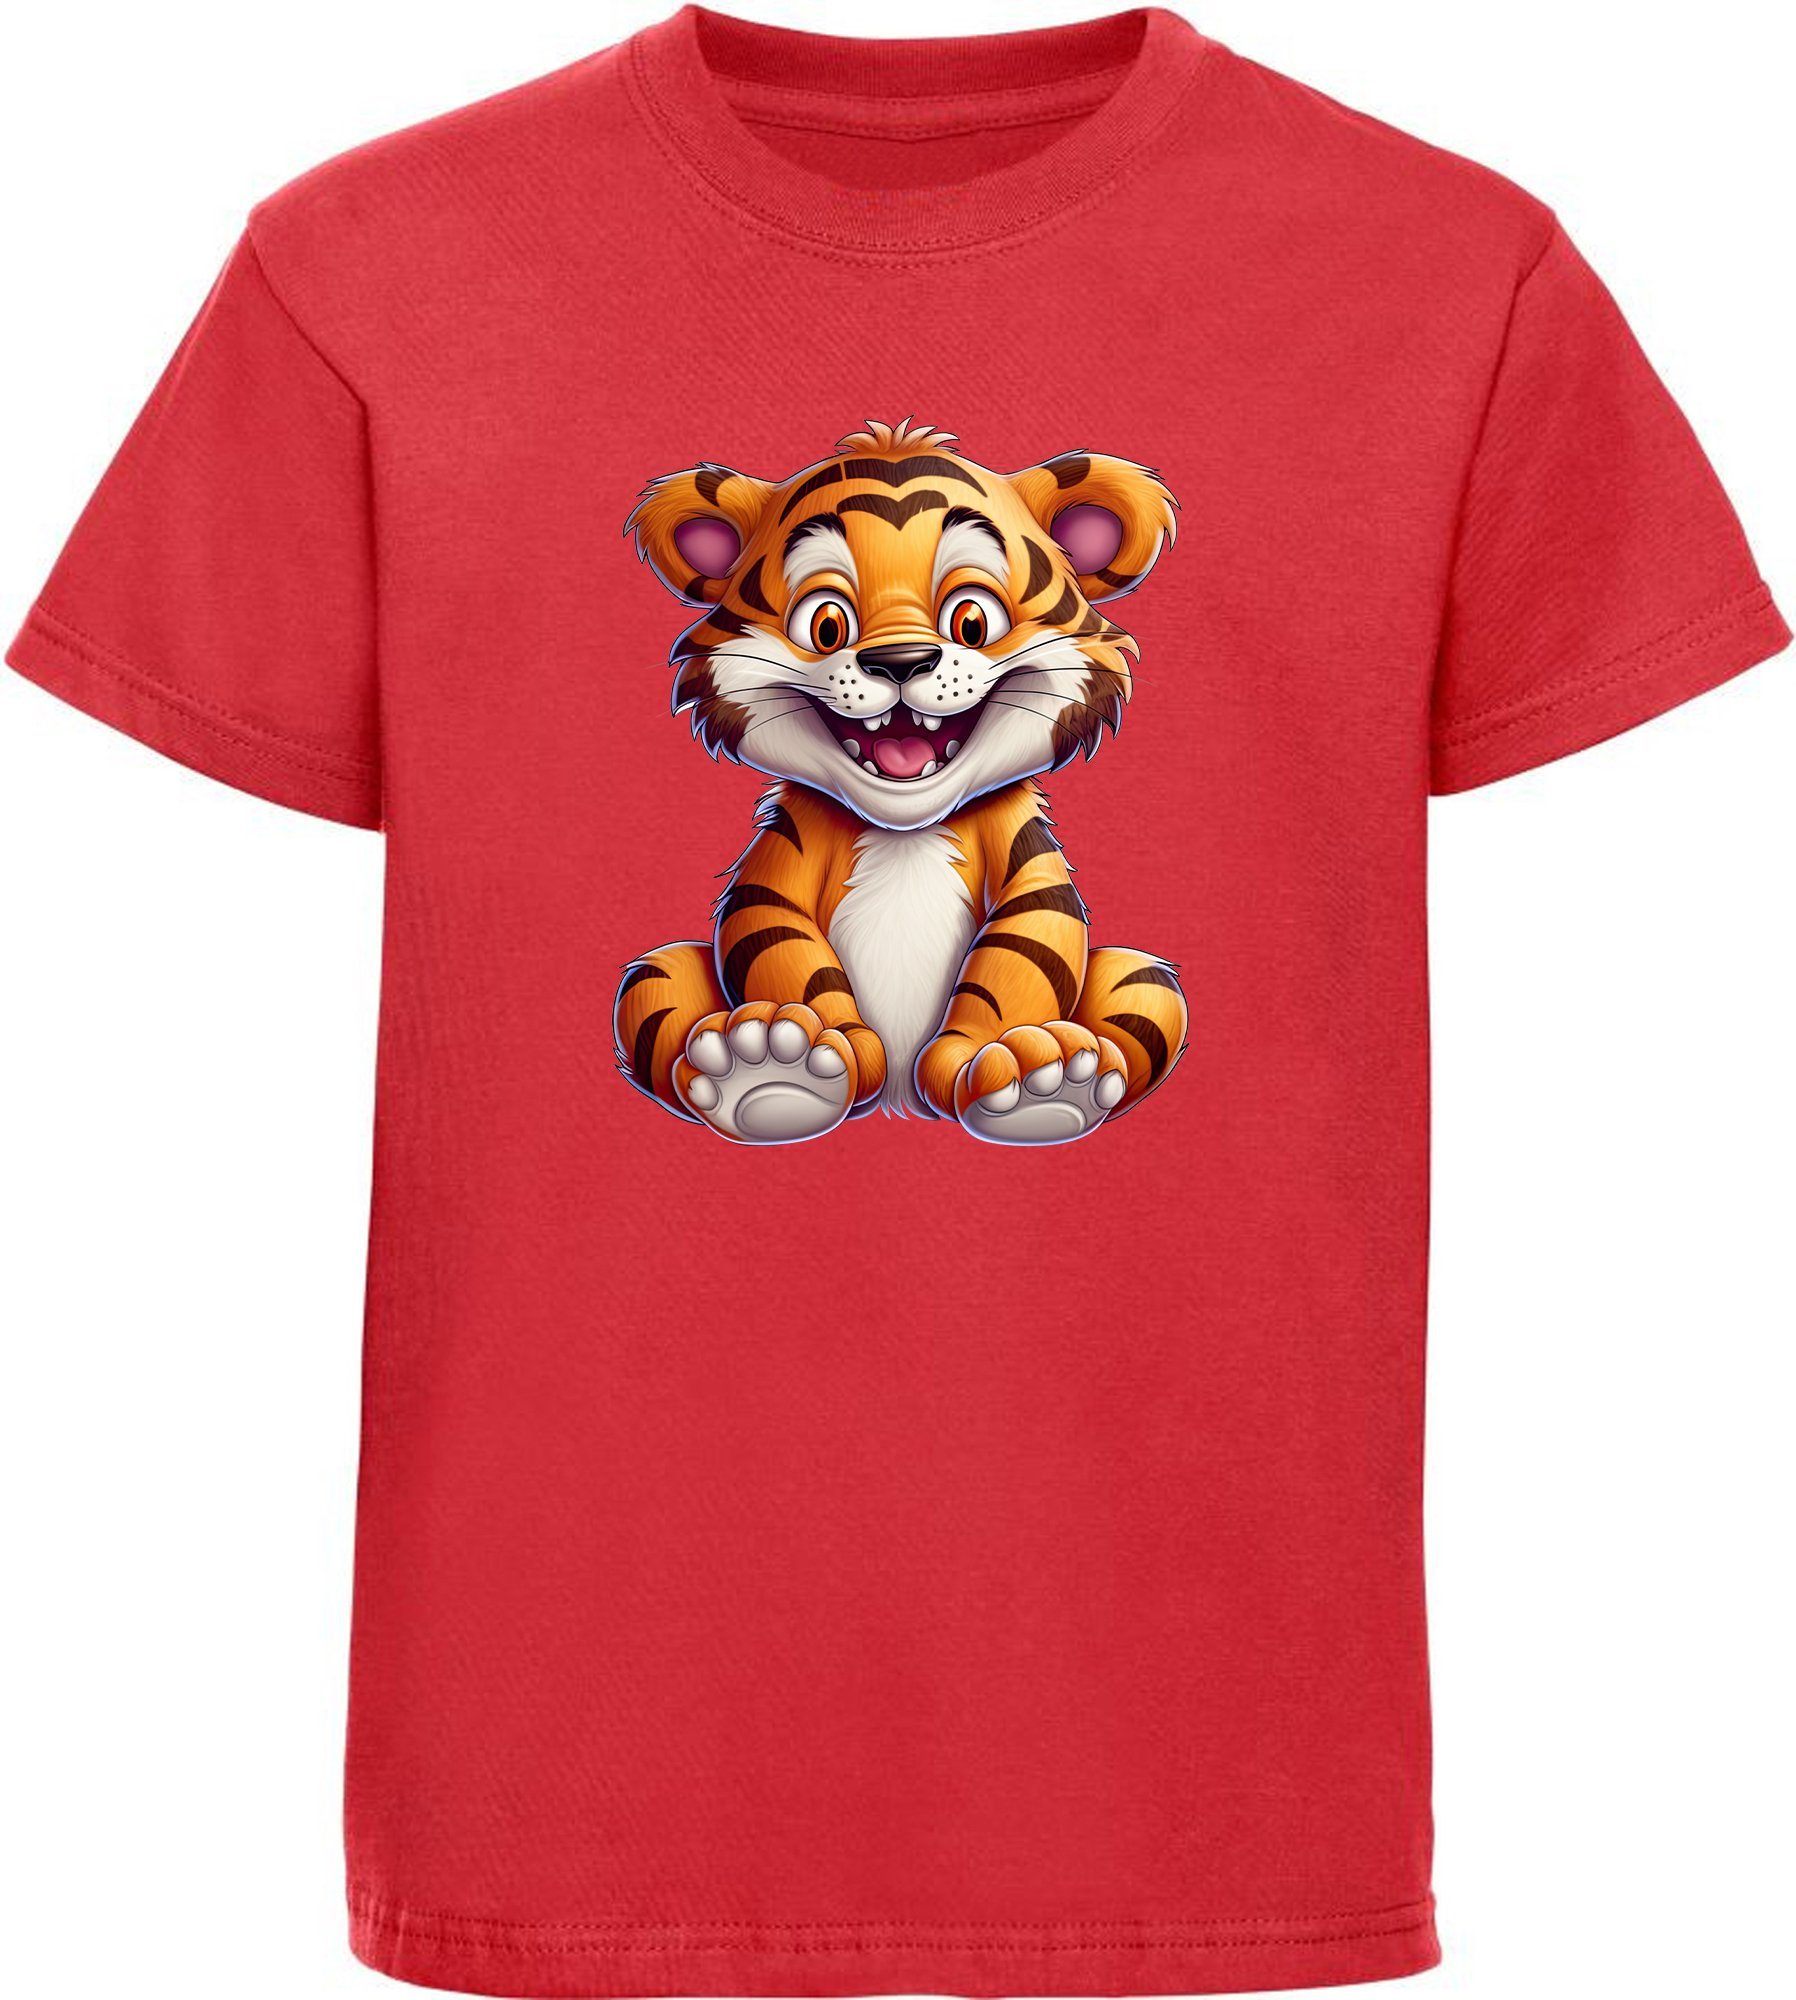 MyDesign24 T-Shirt Kinder Wildtier Print Shirt bedruckt - Baby Tiger Baumwollshirt mit Aufdruck, i278 rot